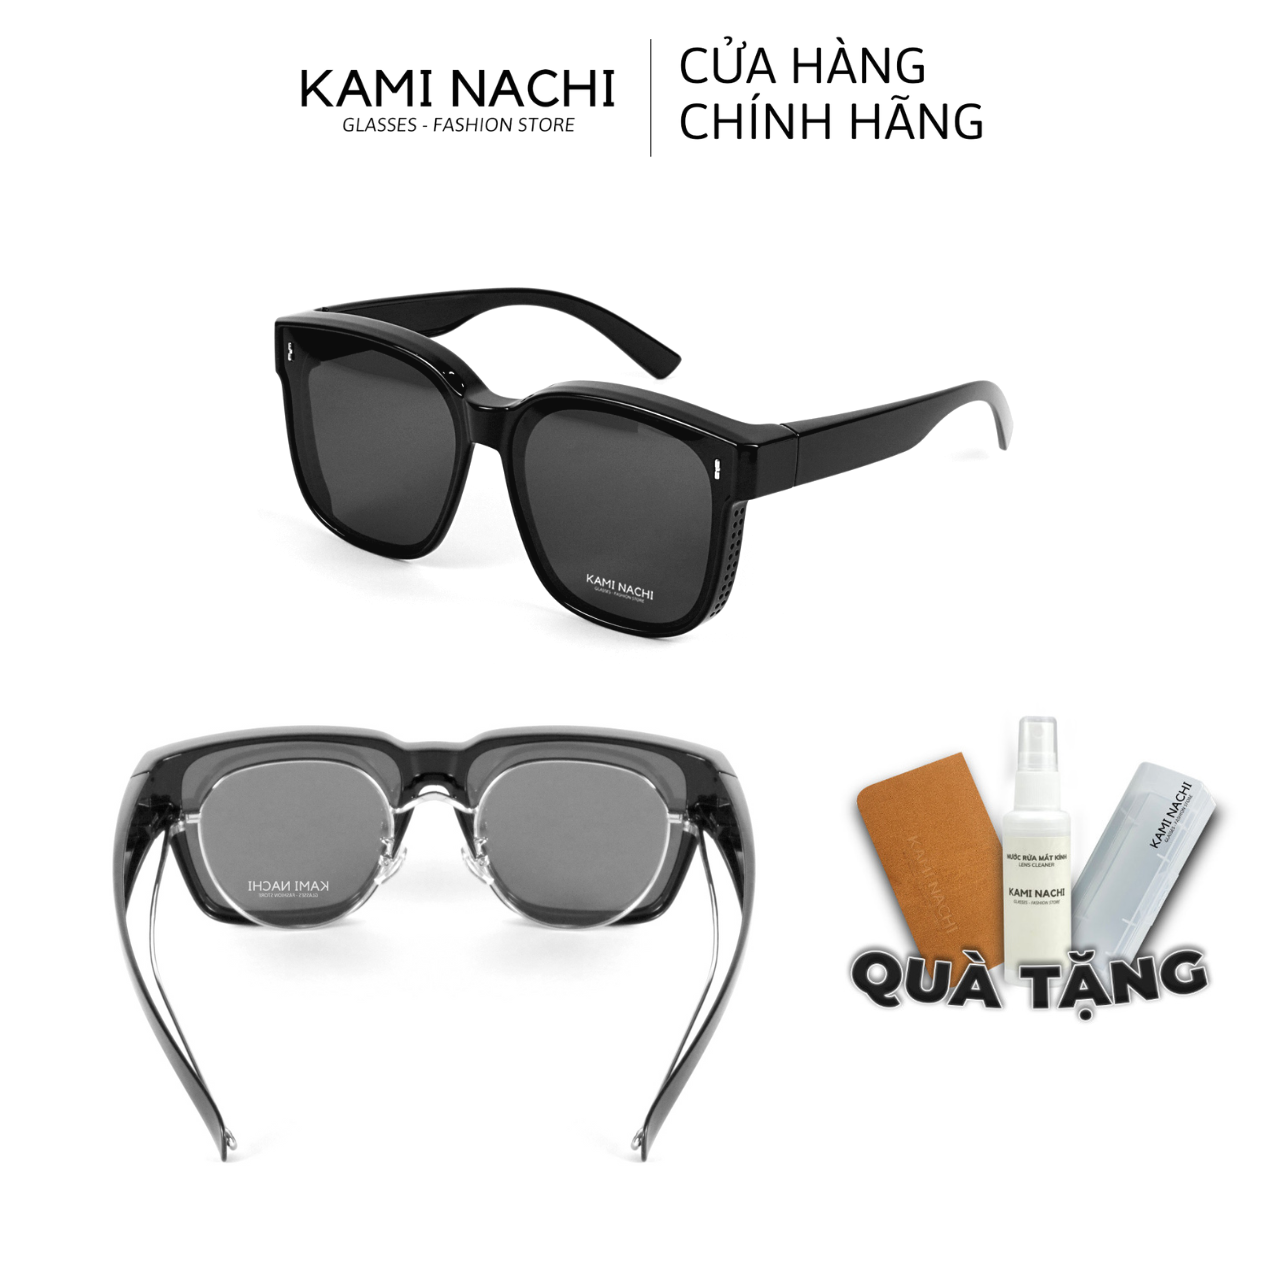 Gọng kính Shield Glasses chống phân cực, chống tia UV, có thể đeo cùng lúc với kính cận KAMI NACHI J10